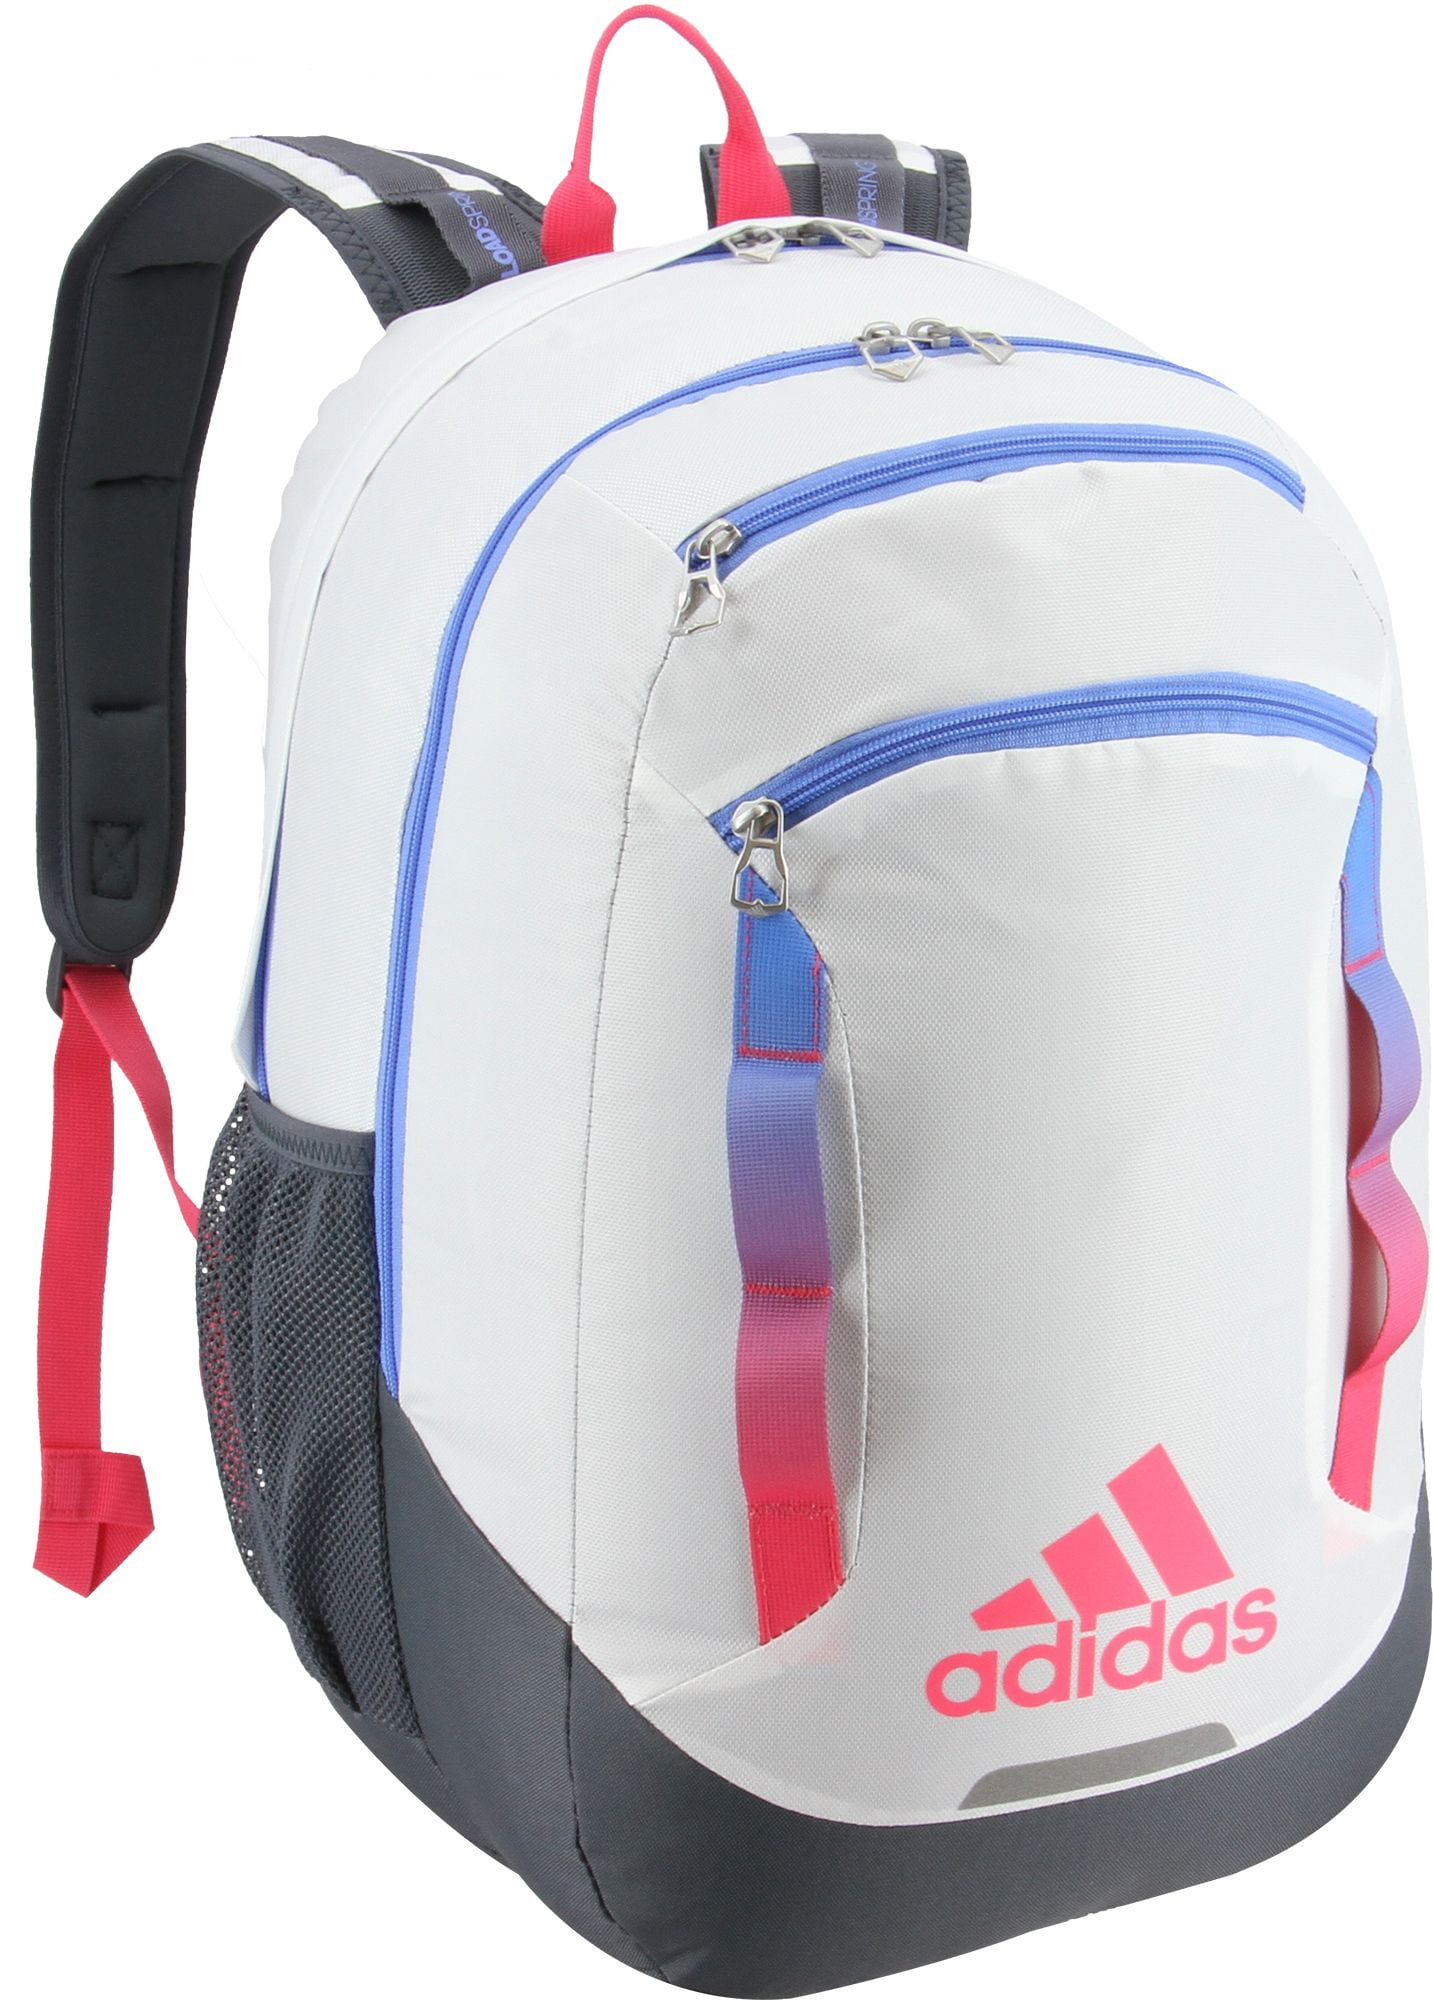 Adidas - adidas Rival Backpack 